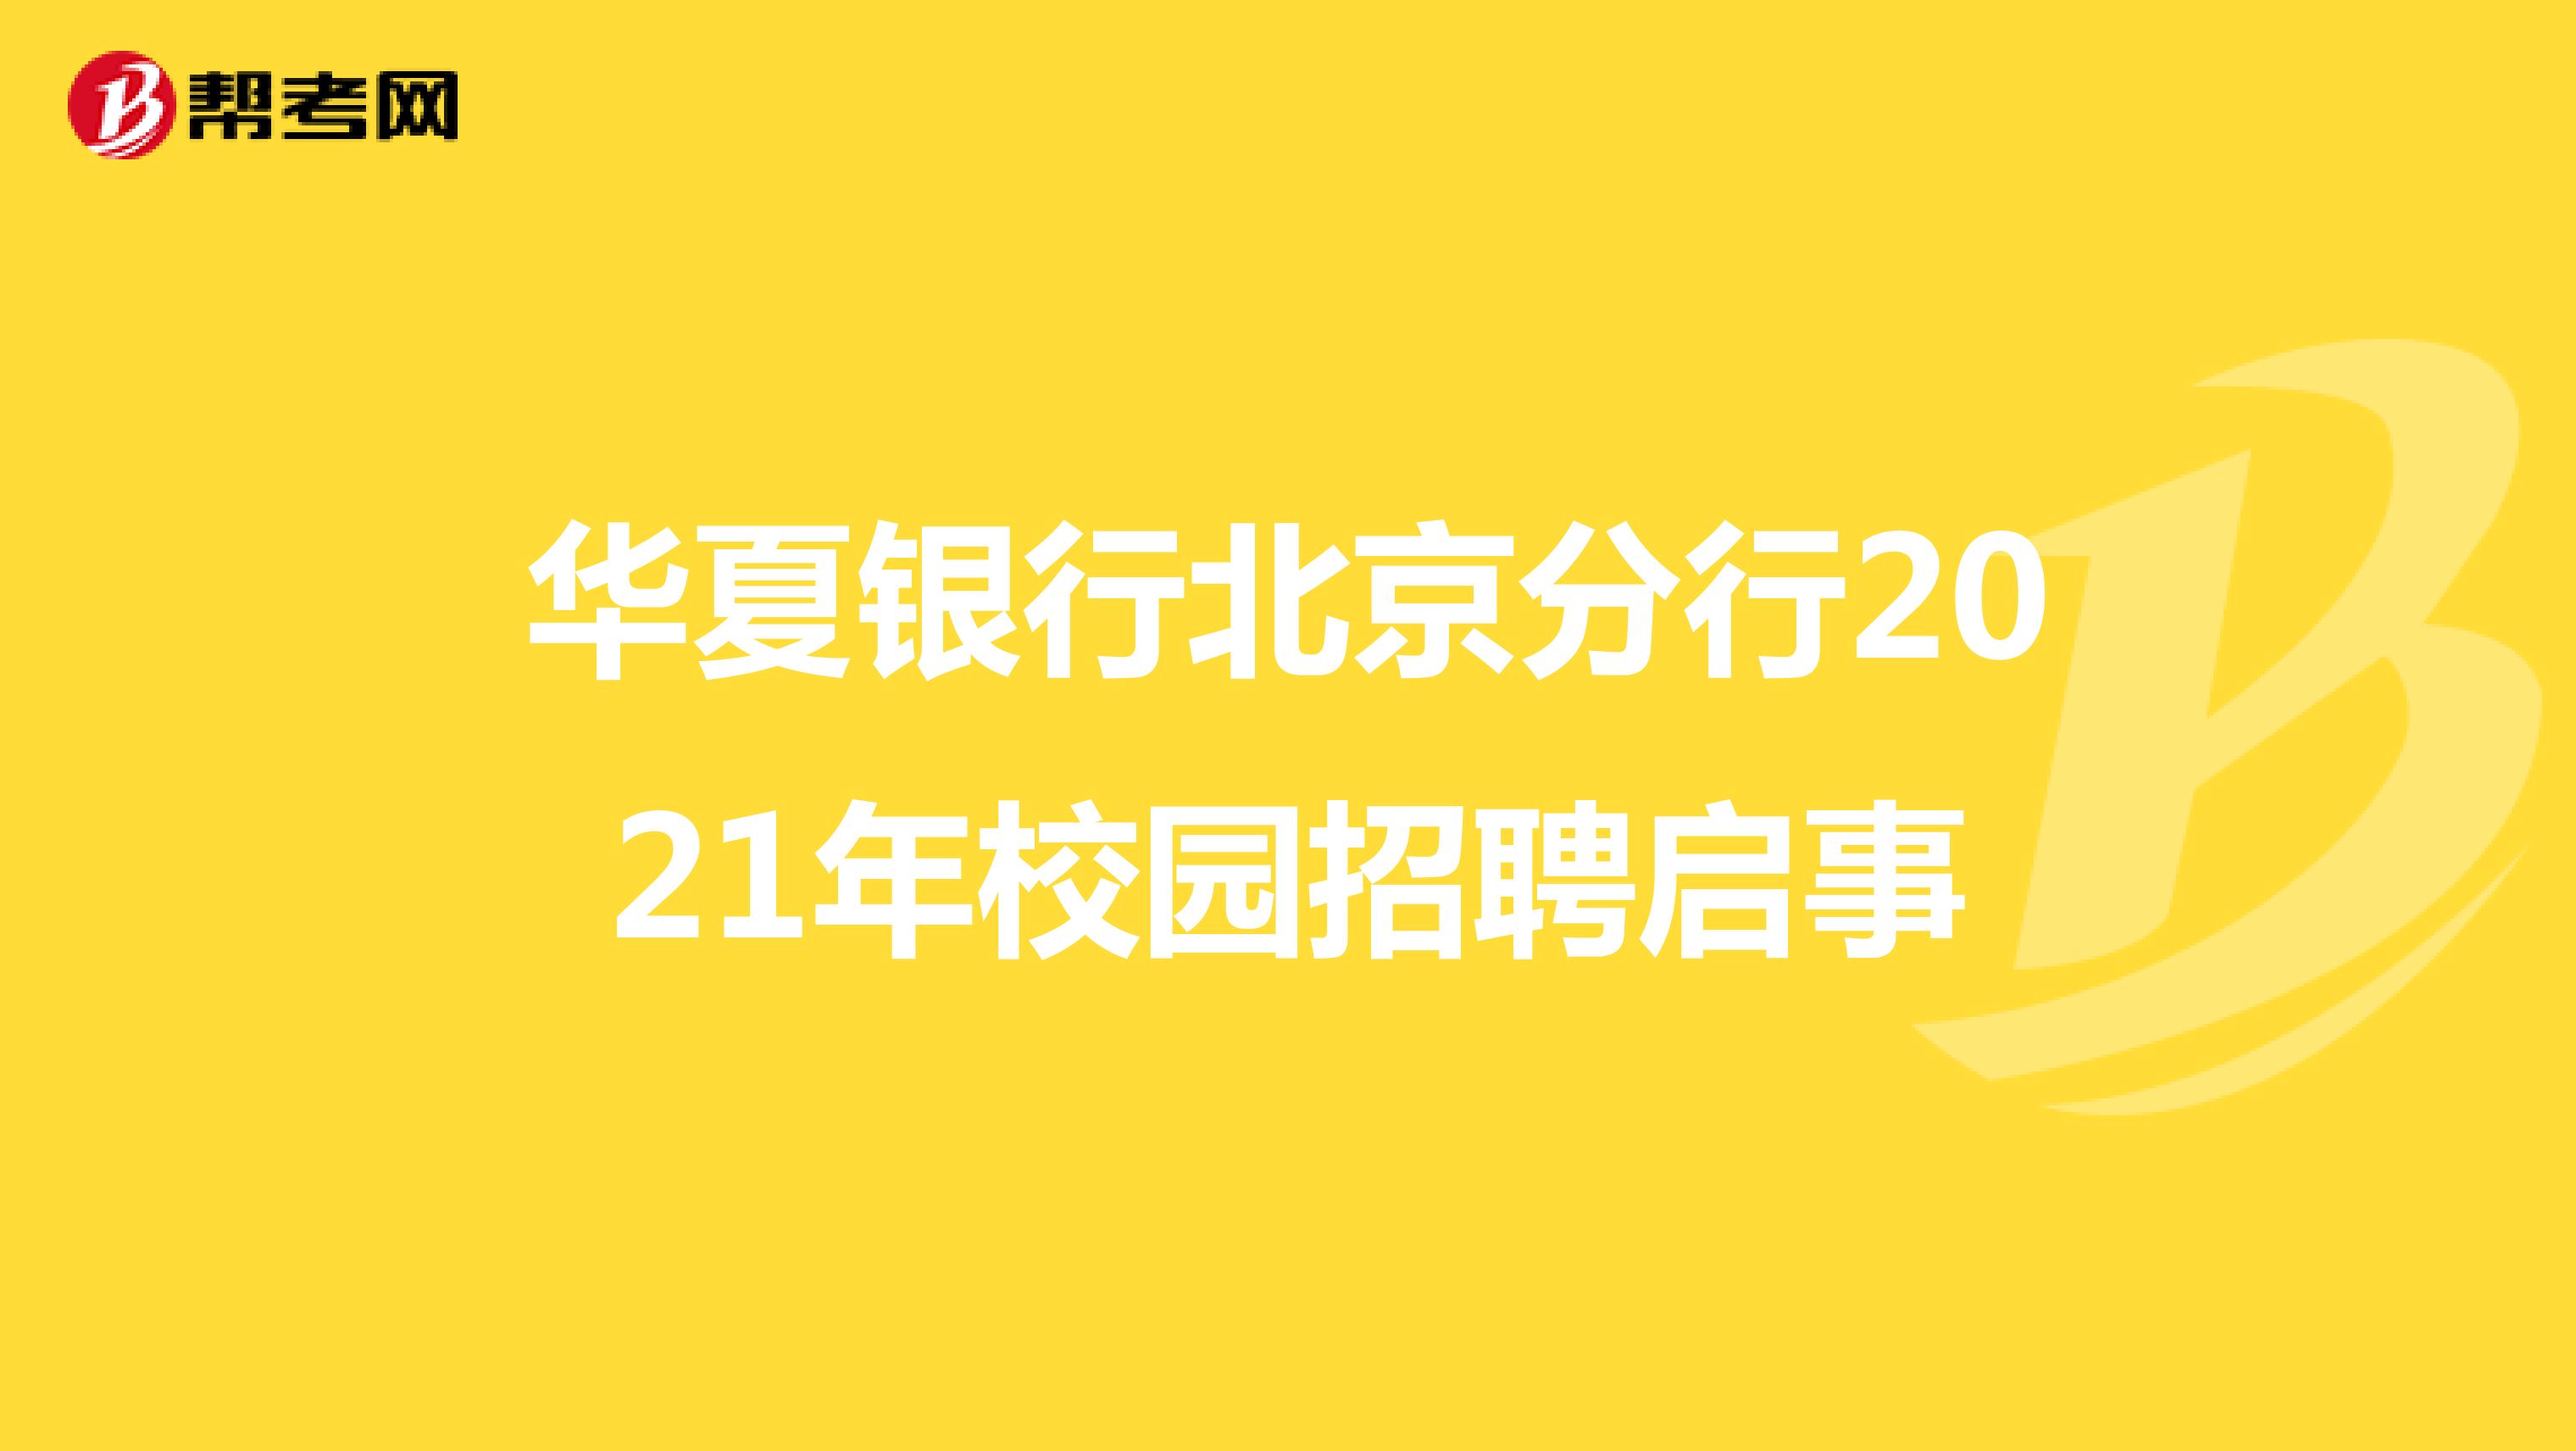 华夏银行北京分行2021年校园招聘启事